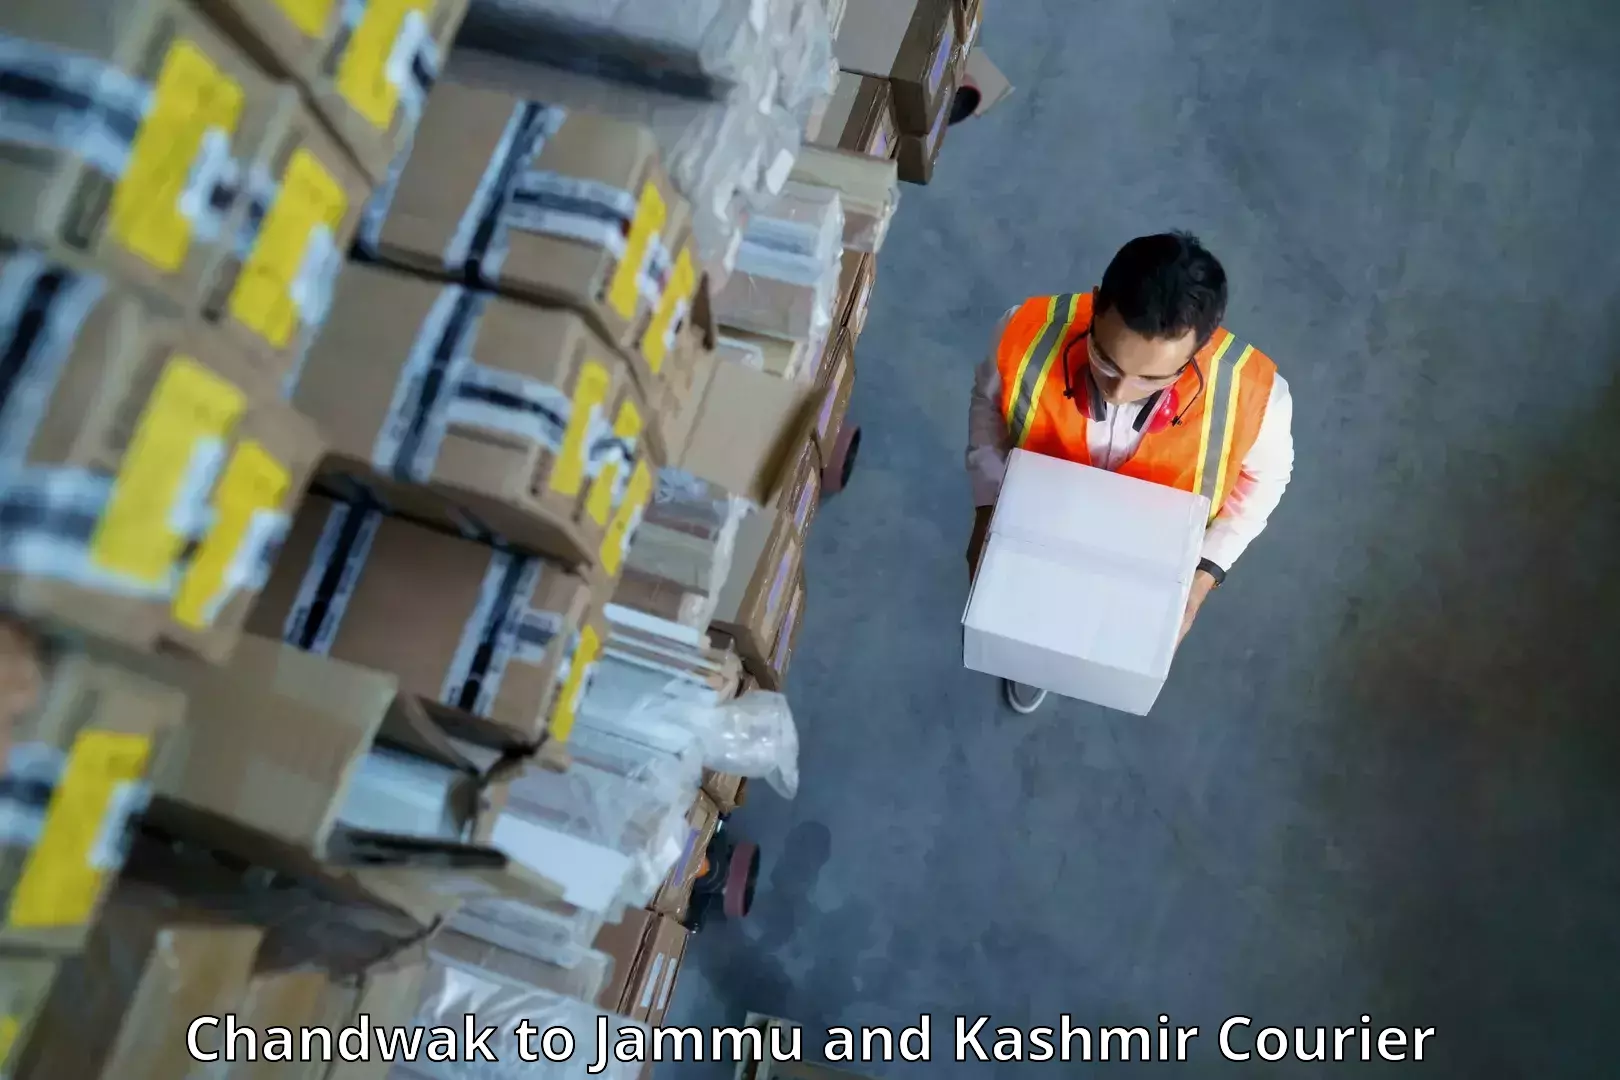 High-capacity shipping options Chandwak to Kulgam